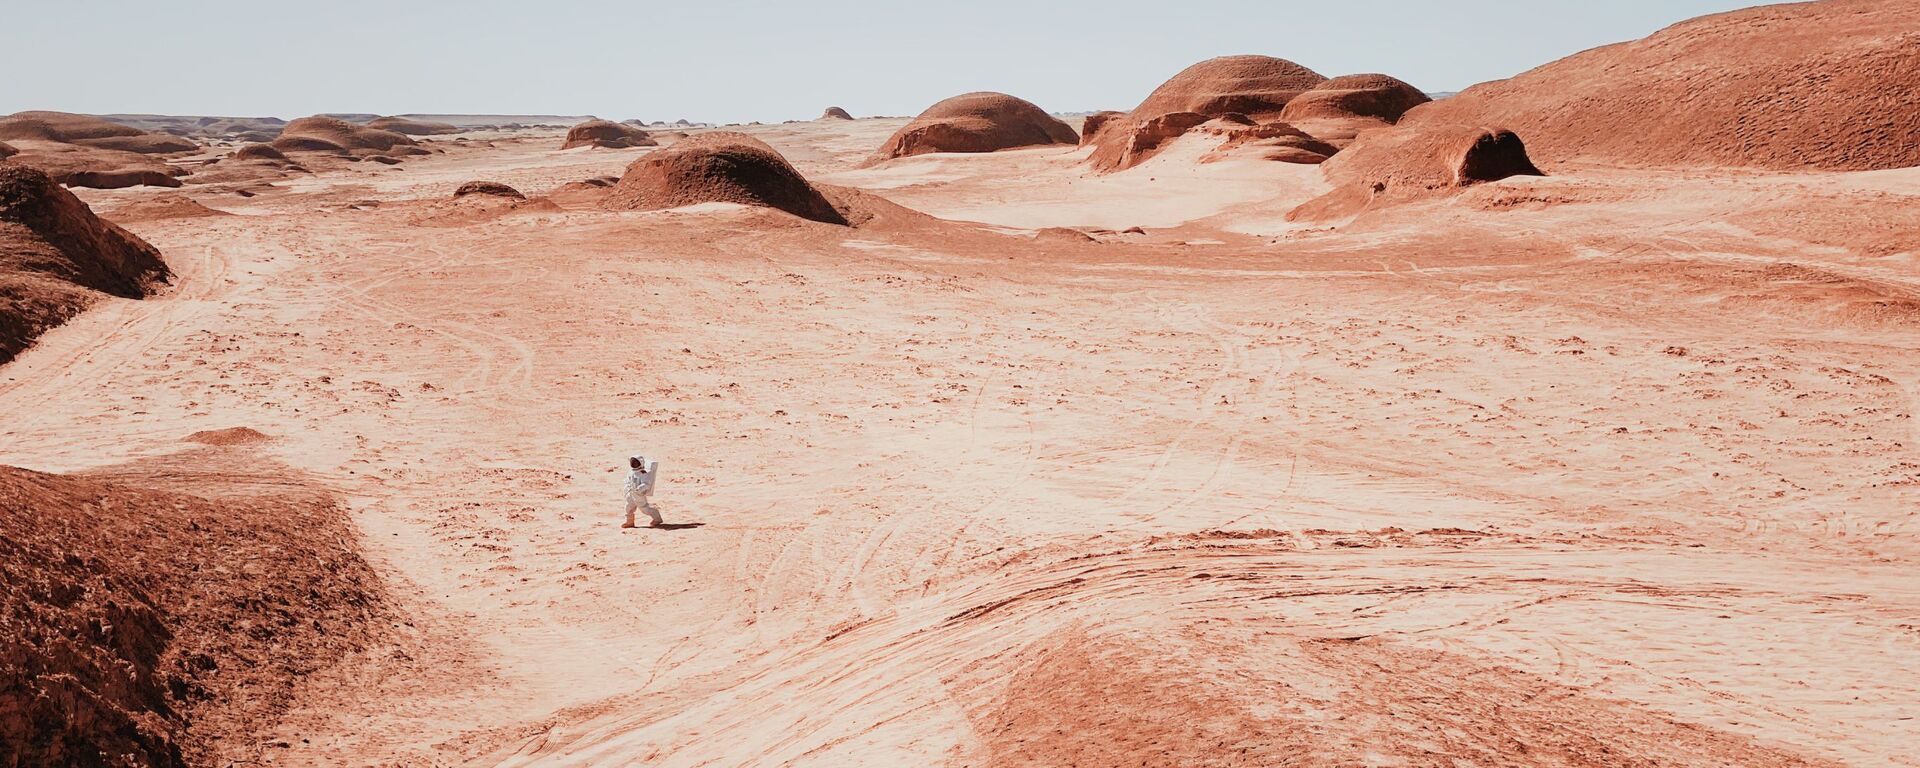 صورة نزهة على المريخ، للمصور الصيني دان ليو، الحائز على المركز الأول في ترشيحات مصور العام من  مسابقة التصوير الدولية IPPAWARDS 2021 - سبوتنيك عربي, 1920, 22.12.2021